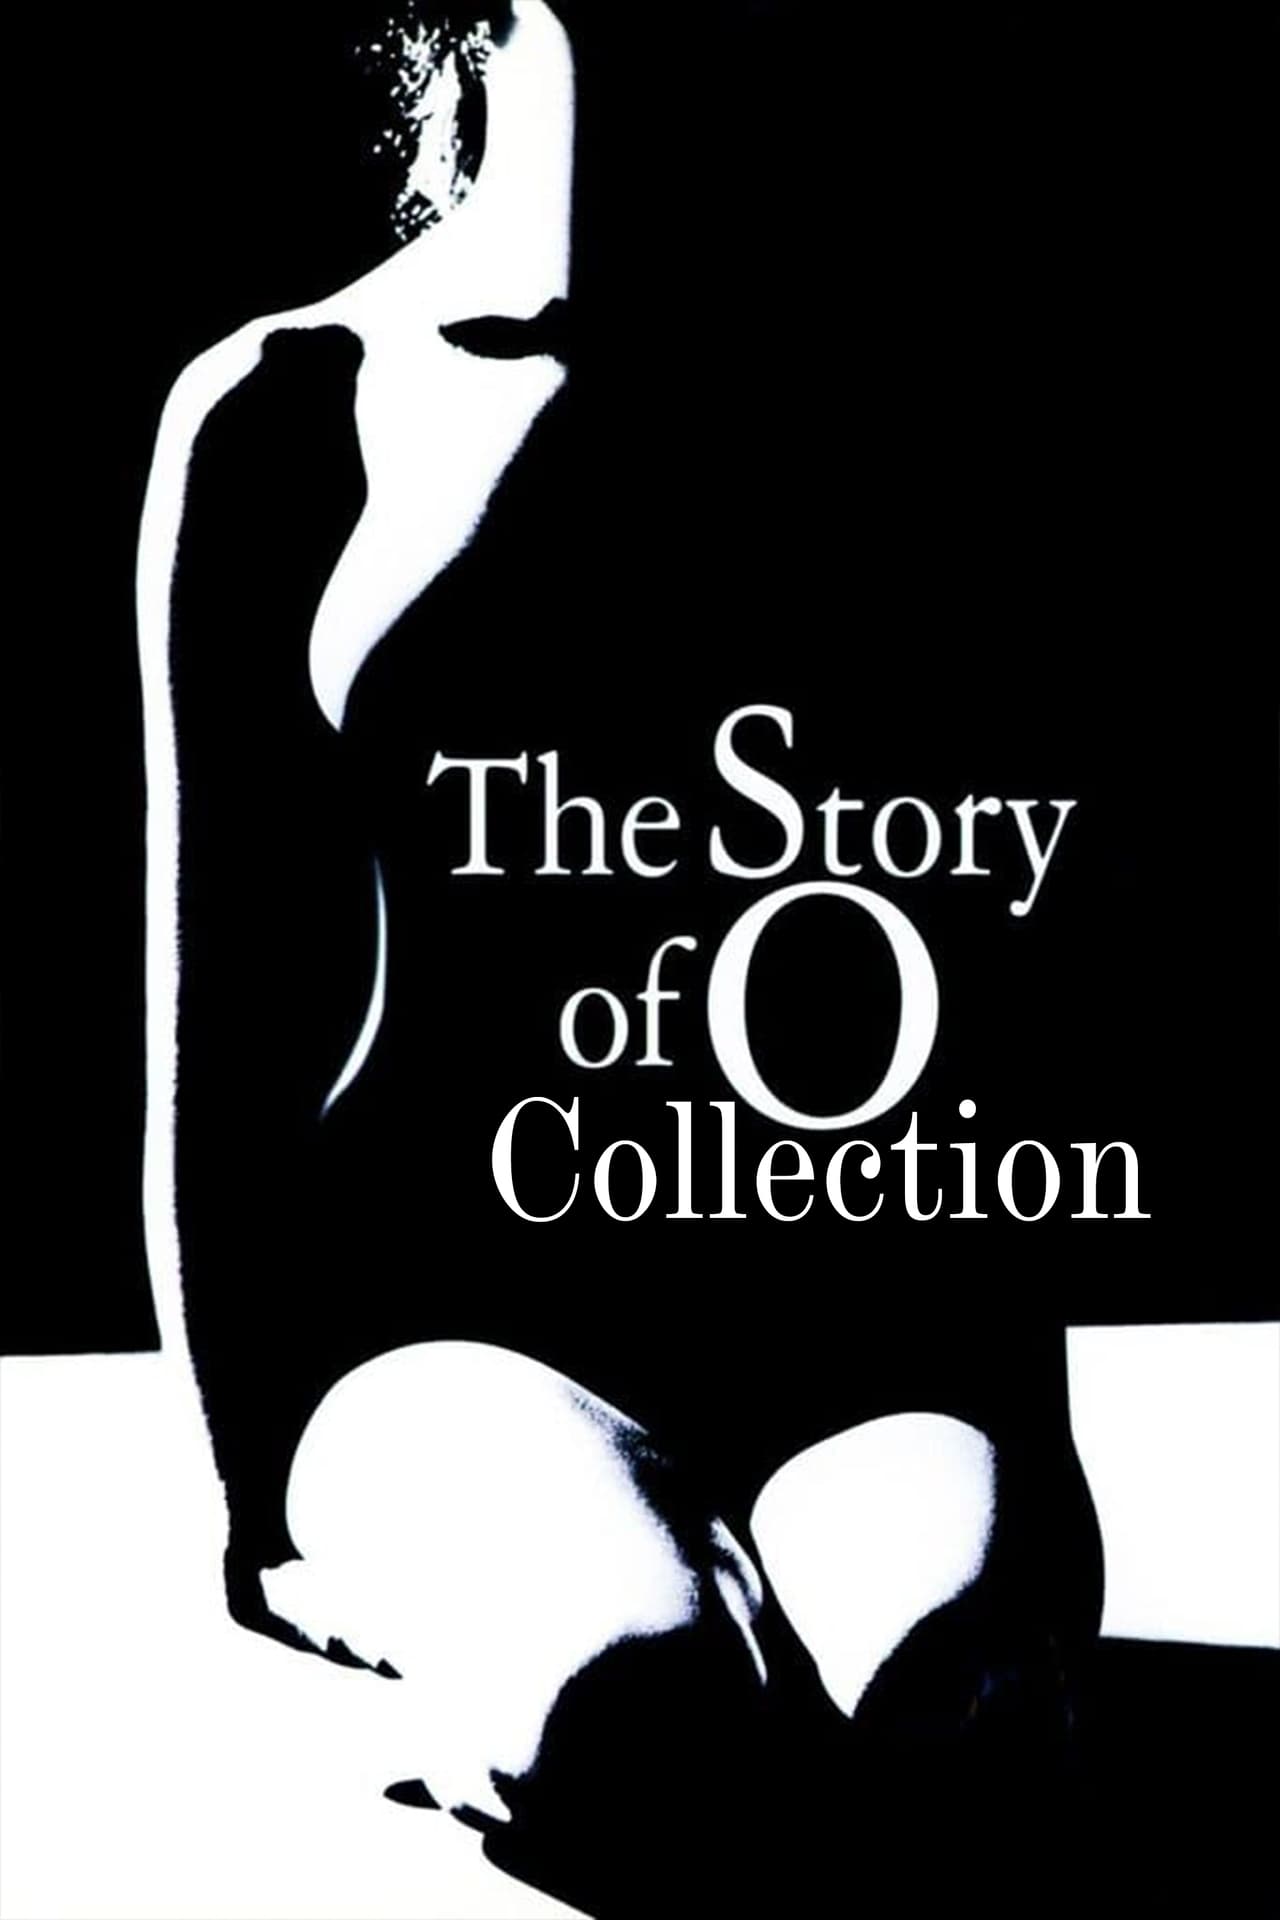 Obrazek ke kolekci filmu a serialu The Story of O